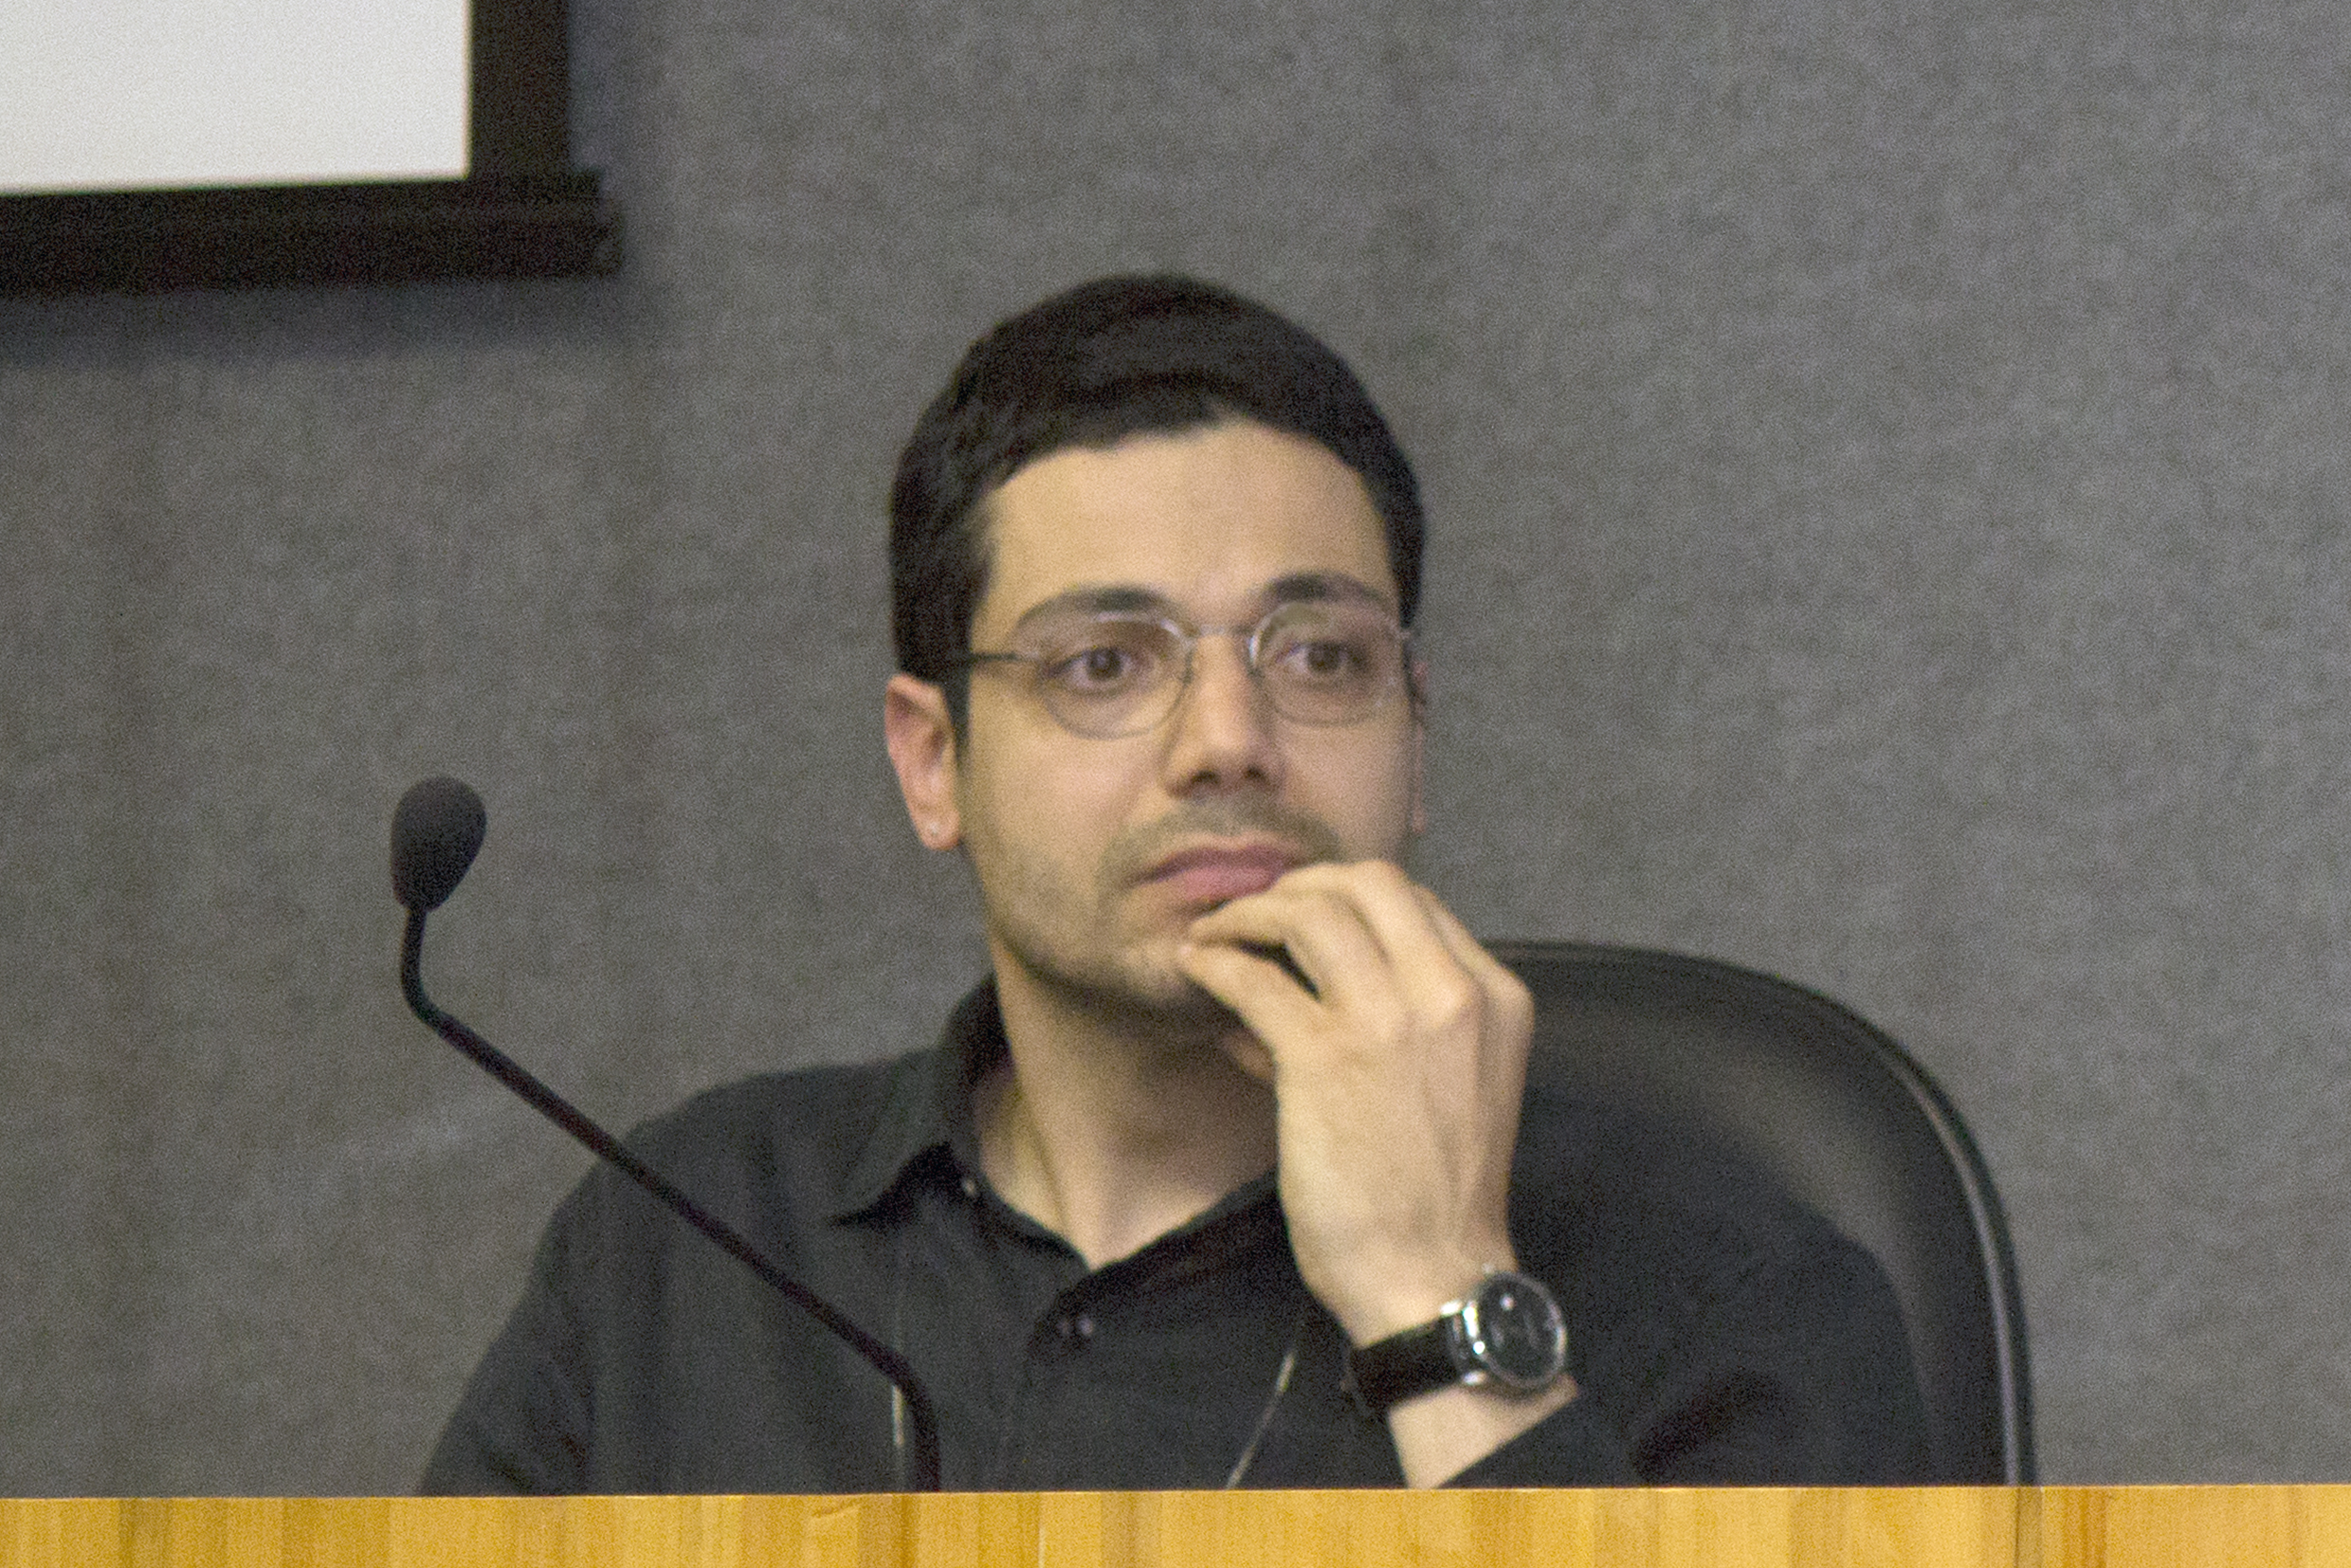 Eduardo Almeida's presentation - April 25, 2015